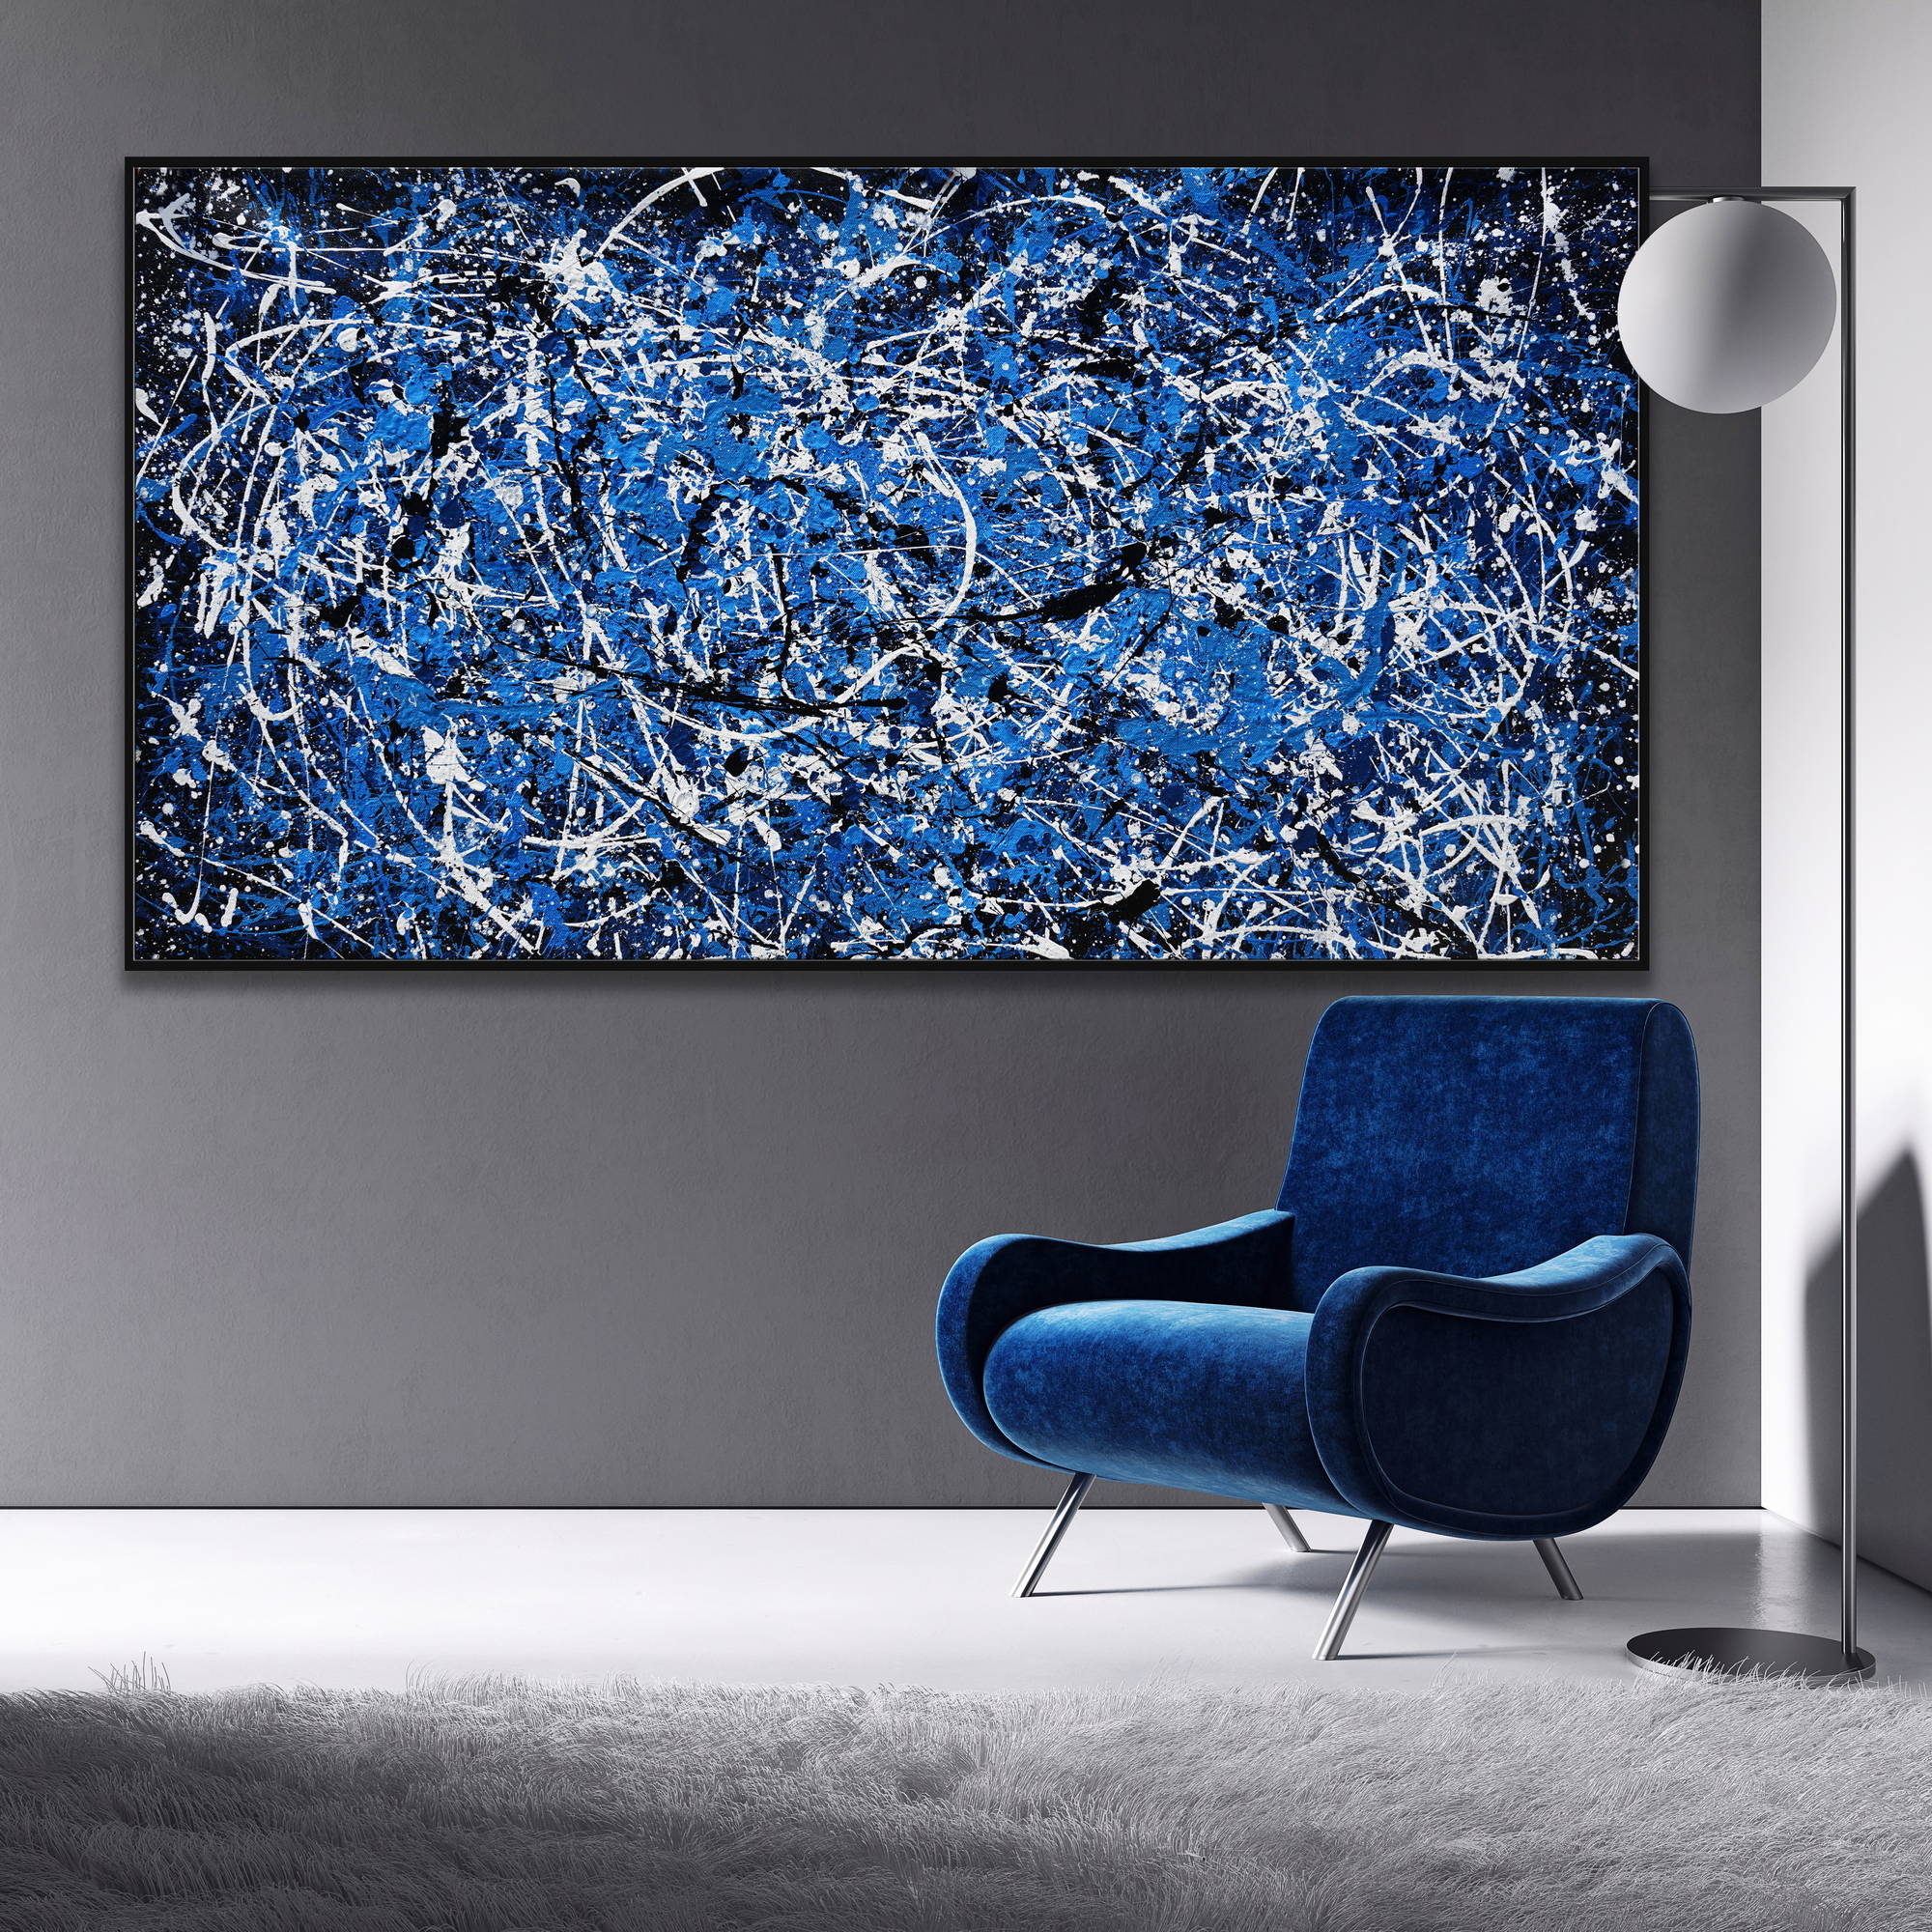 Dipinto a mano Astratto Blu e Bianco Stile Pollock 75x150cm